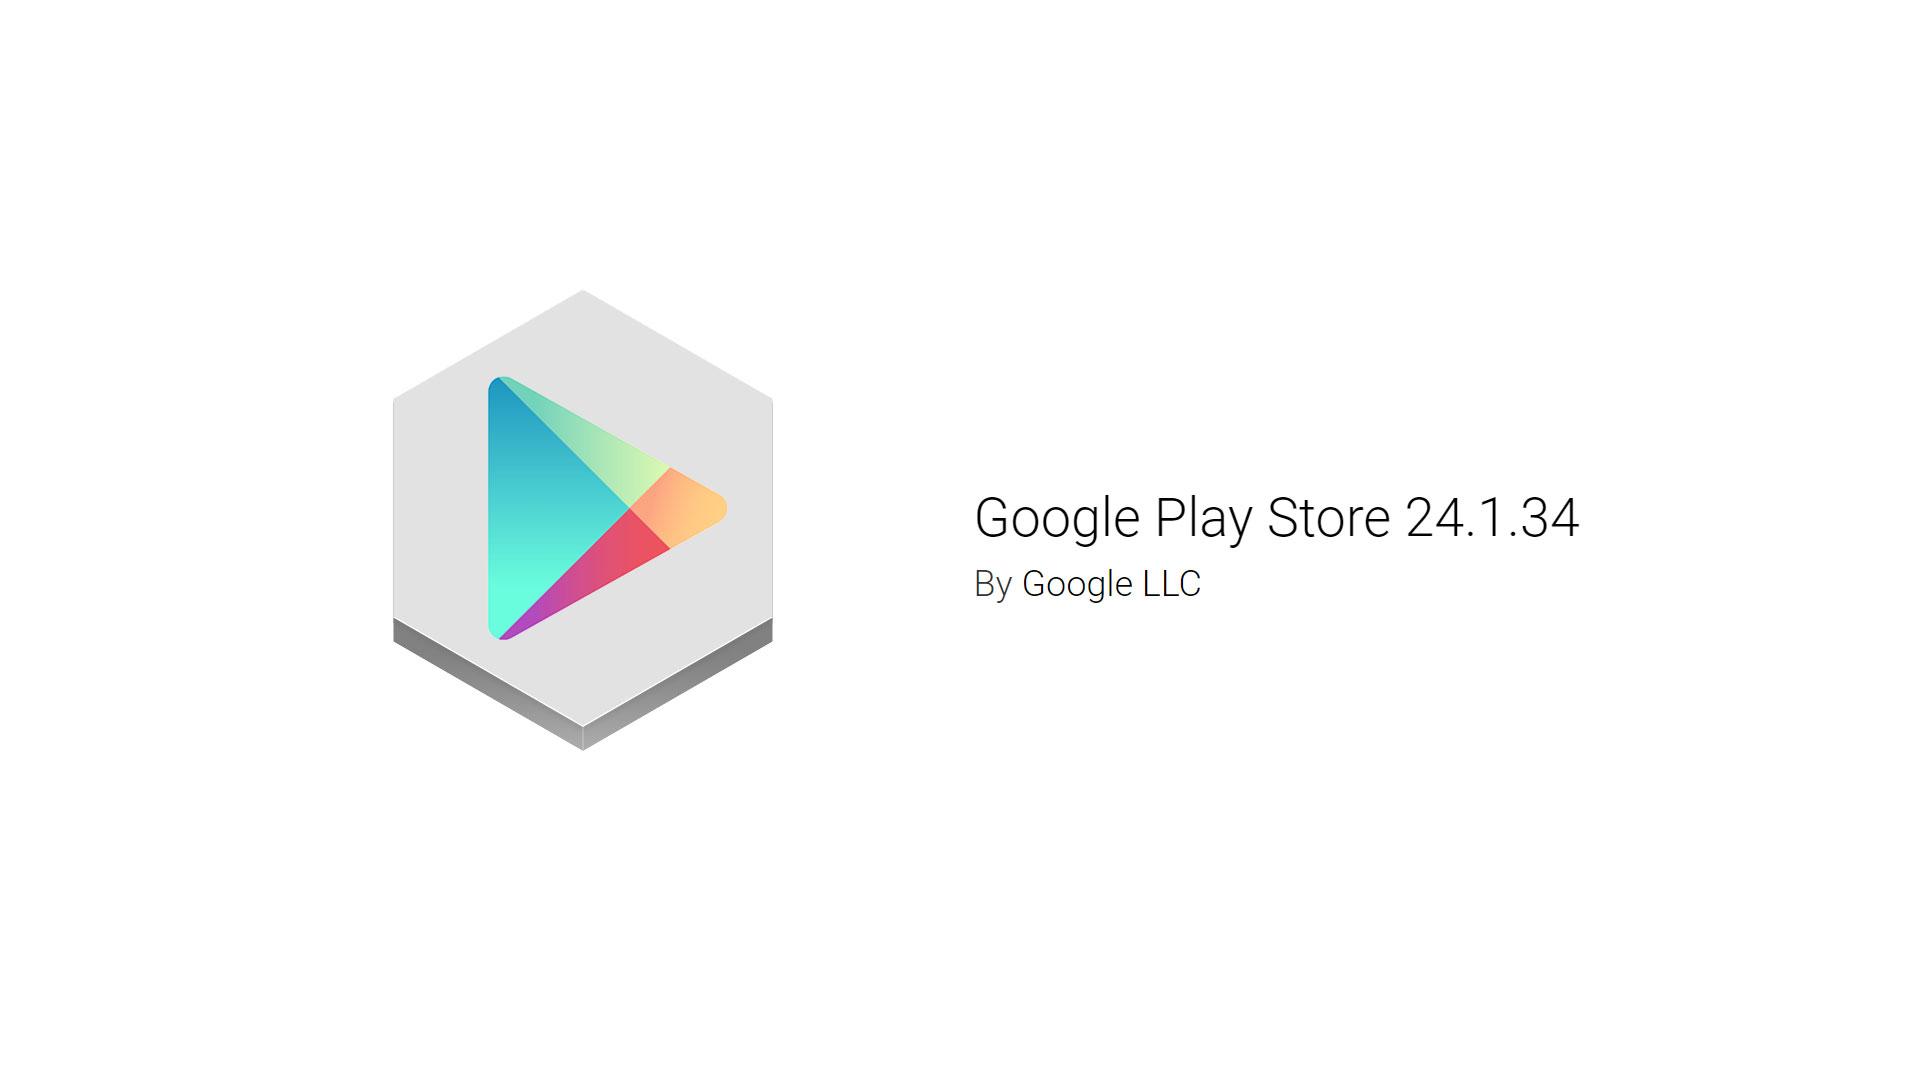 Обновление Google Play Store 24.1.34 уже доступно для установки